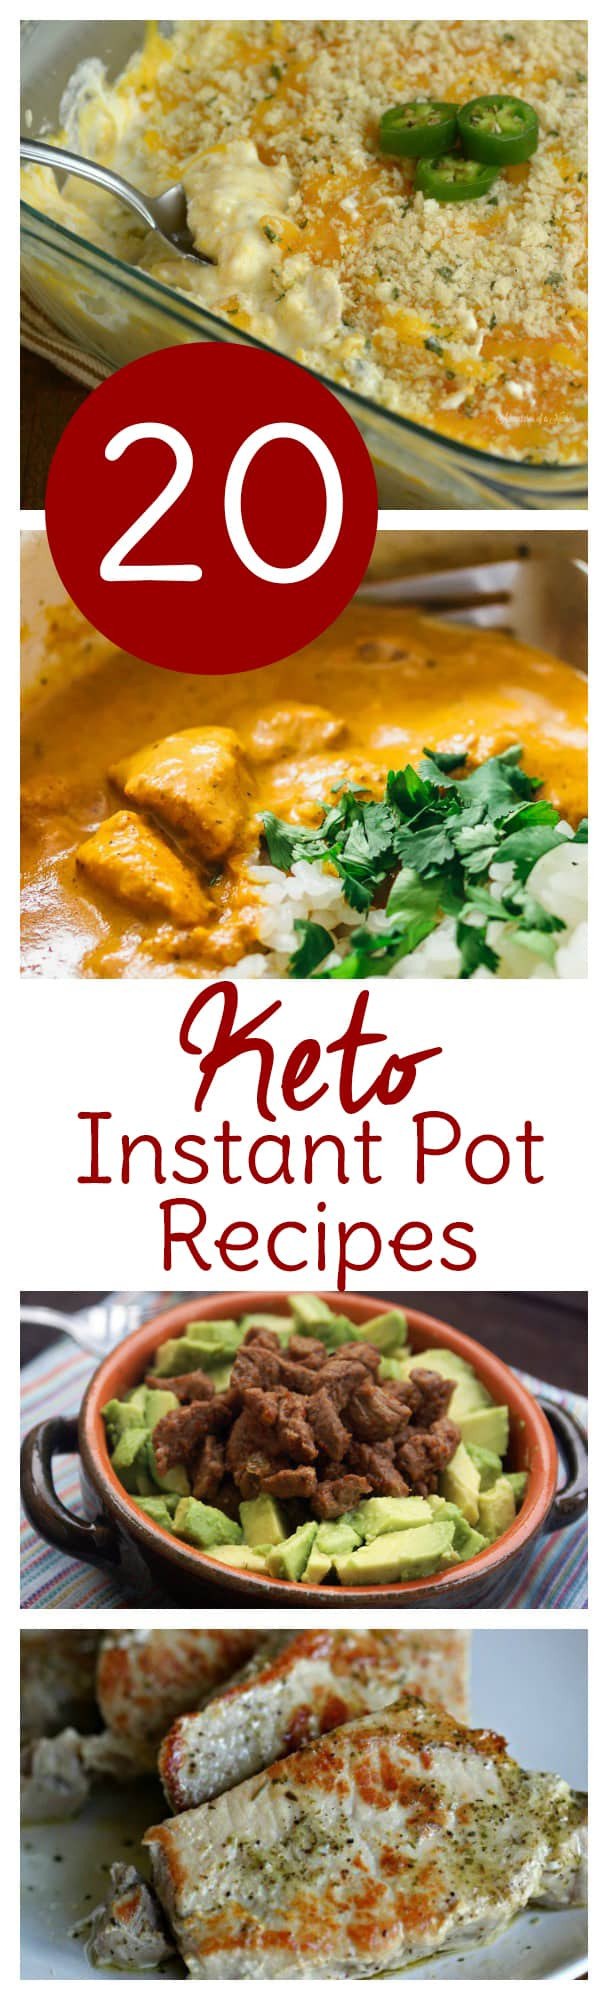 Instant Pot Keto Recipes
 20 Instant Pot Keto Recipes to Make This Week